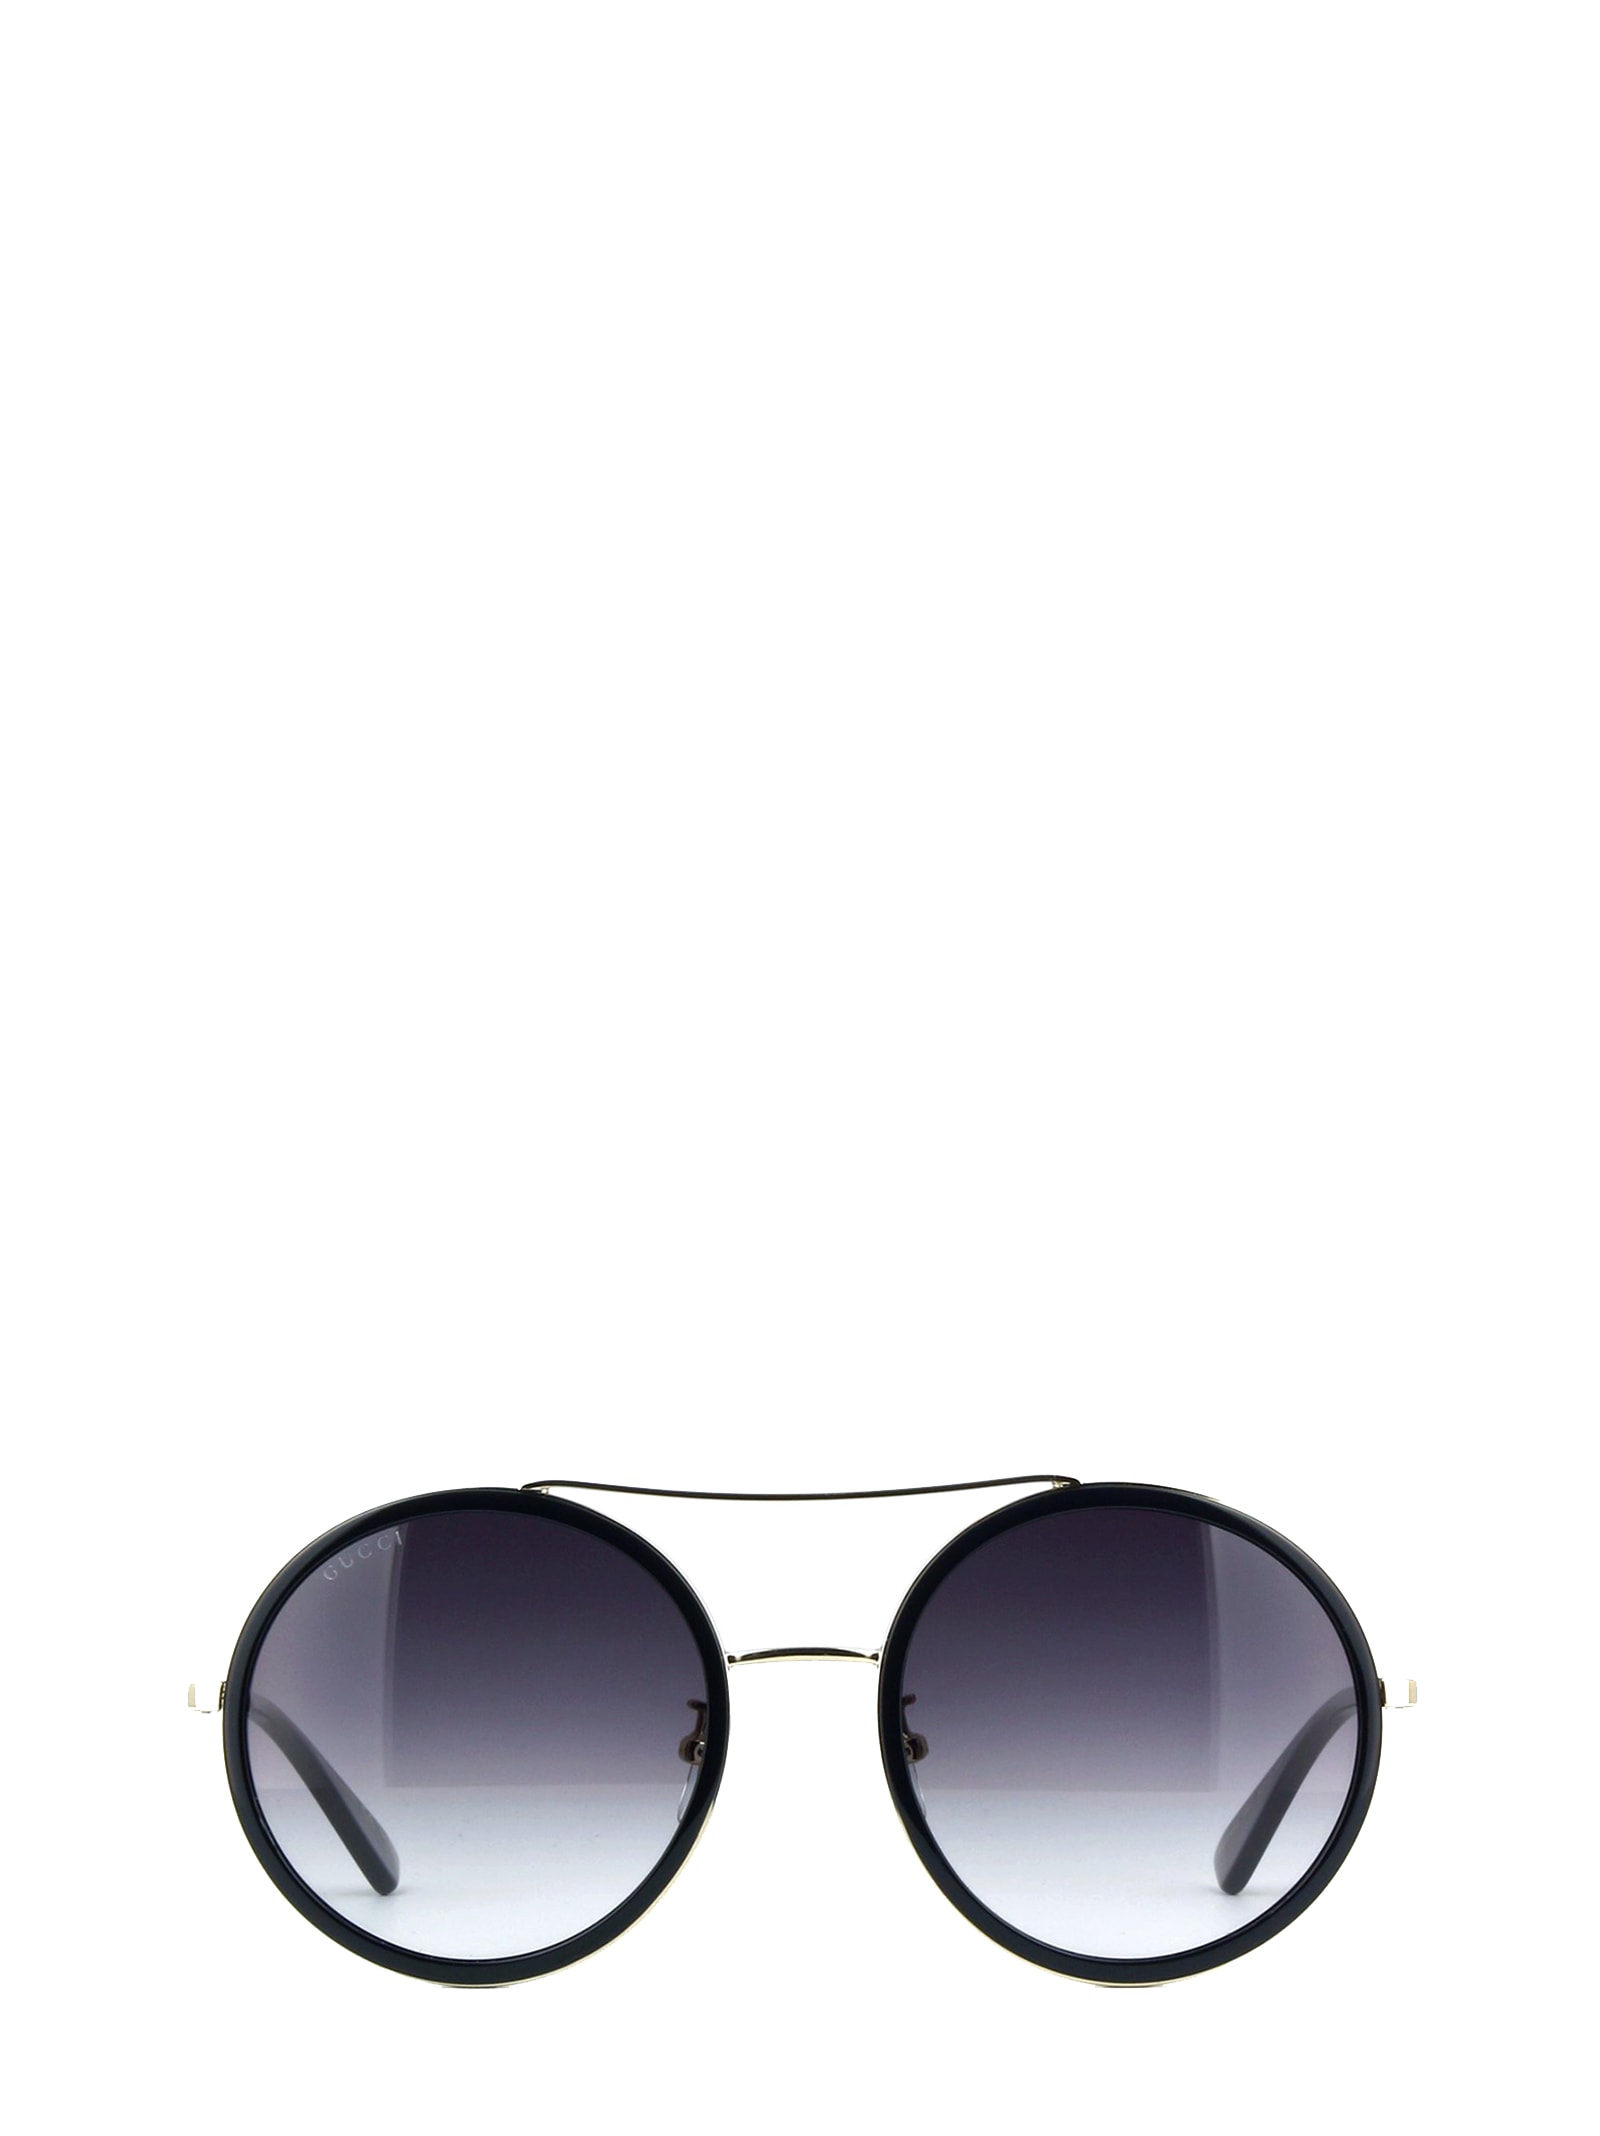 Gucci Gg0061s Black Sunglasses